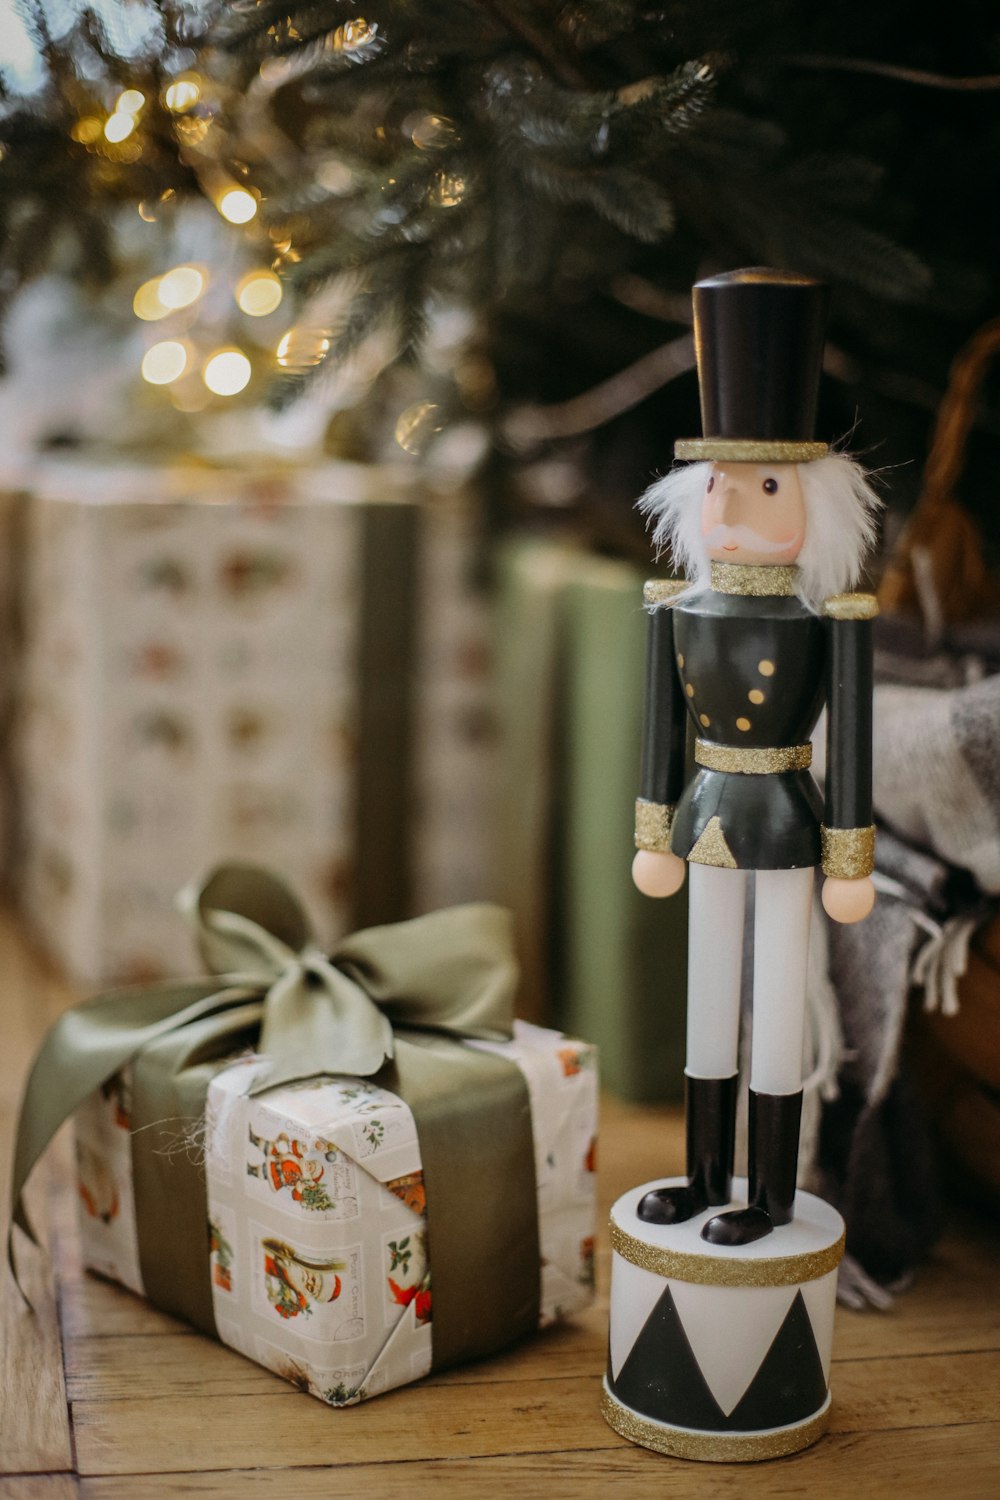 a nutcracker figurine next to a christmas tree